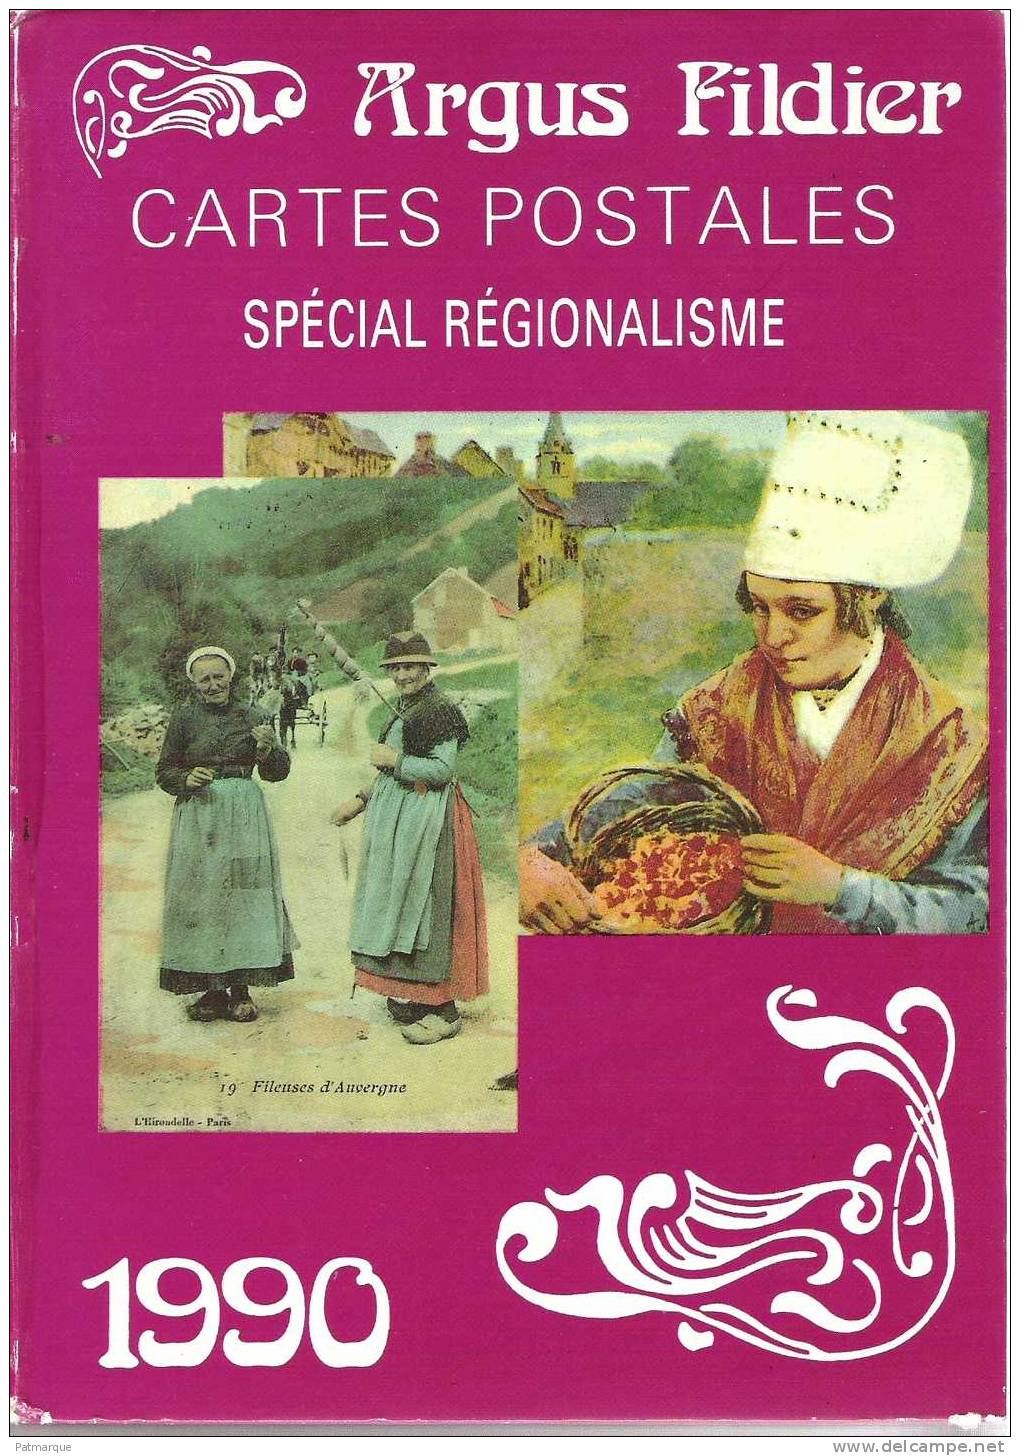 LOT DE 3 ARGUS FILDIER 1985 - 1988 Et 1990 - CATALOGUE DE CARTES POSTALES ANCIENNES DE COLLECTION - Bücher & Kataloge